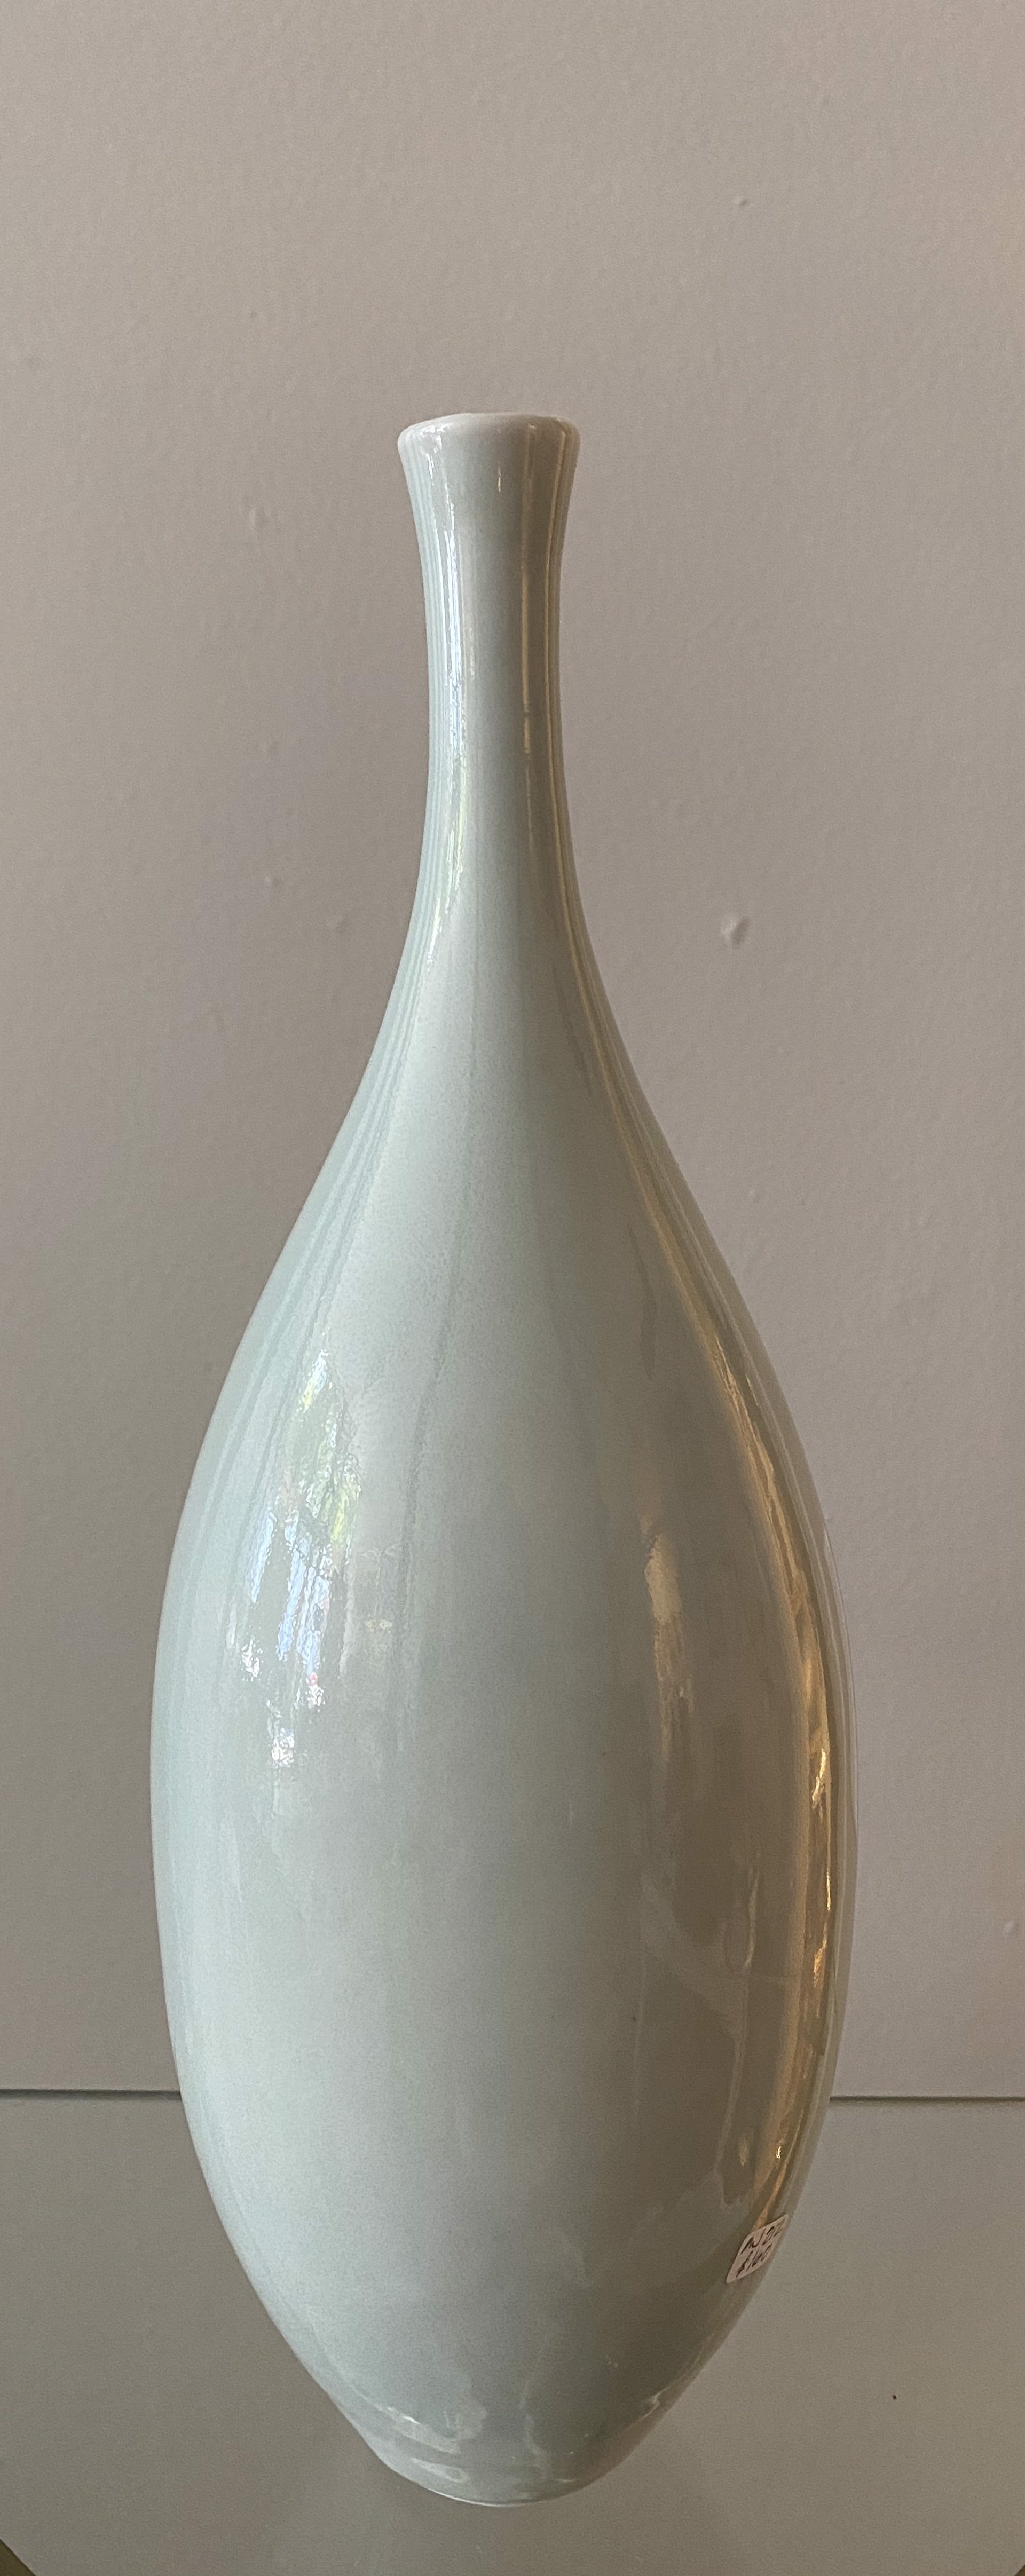 Porcelain Bottle 212 by Ann John